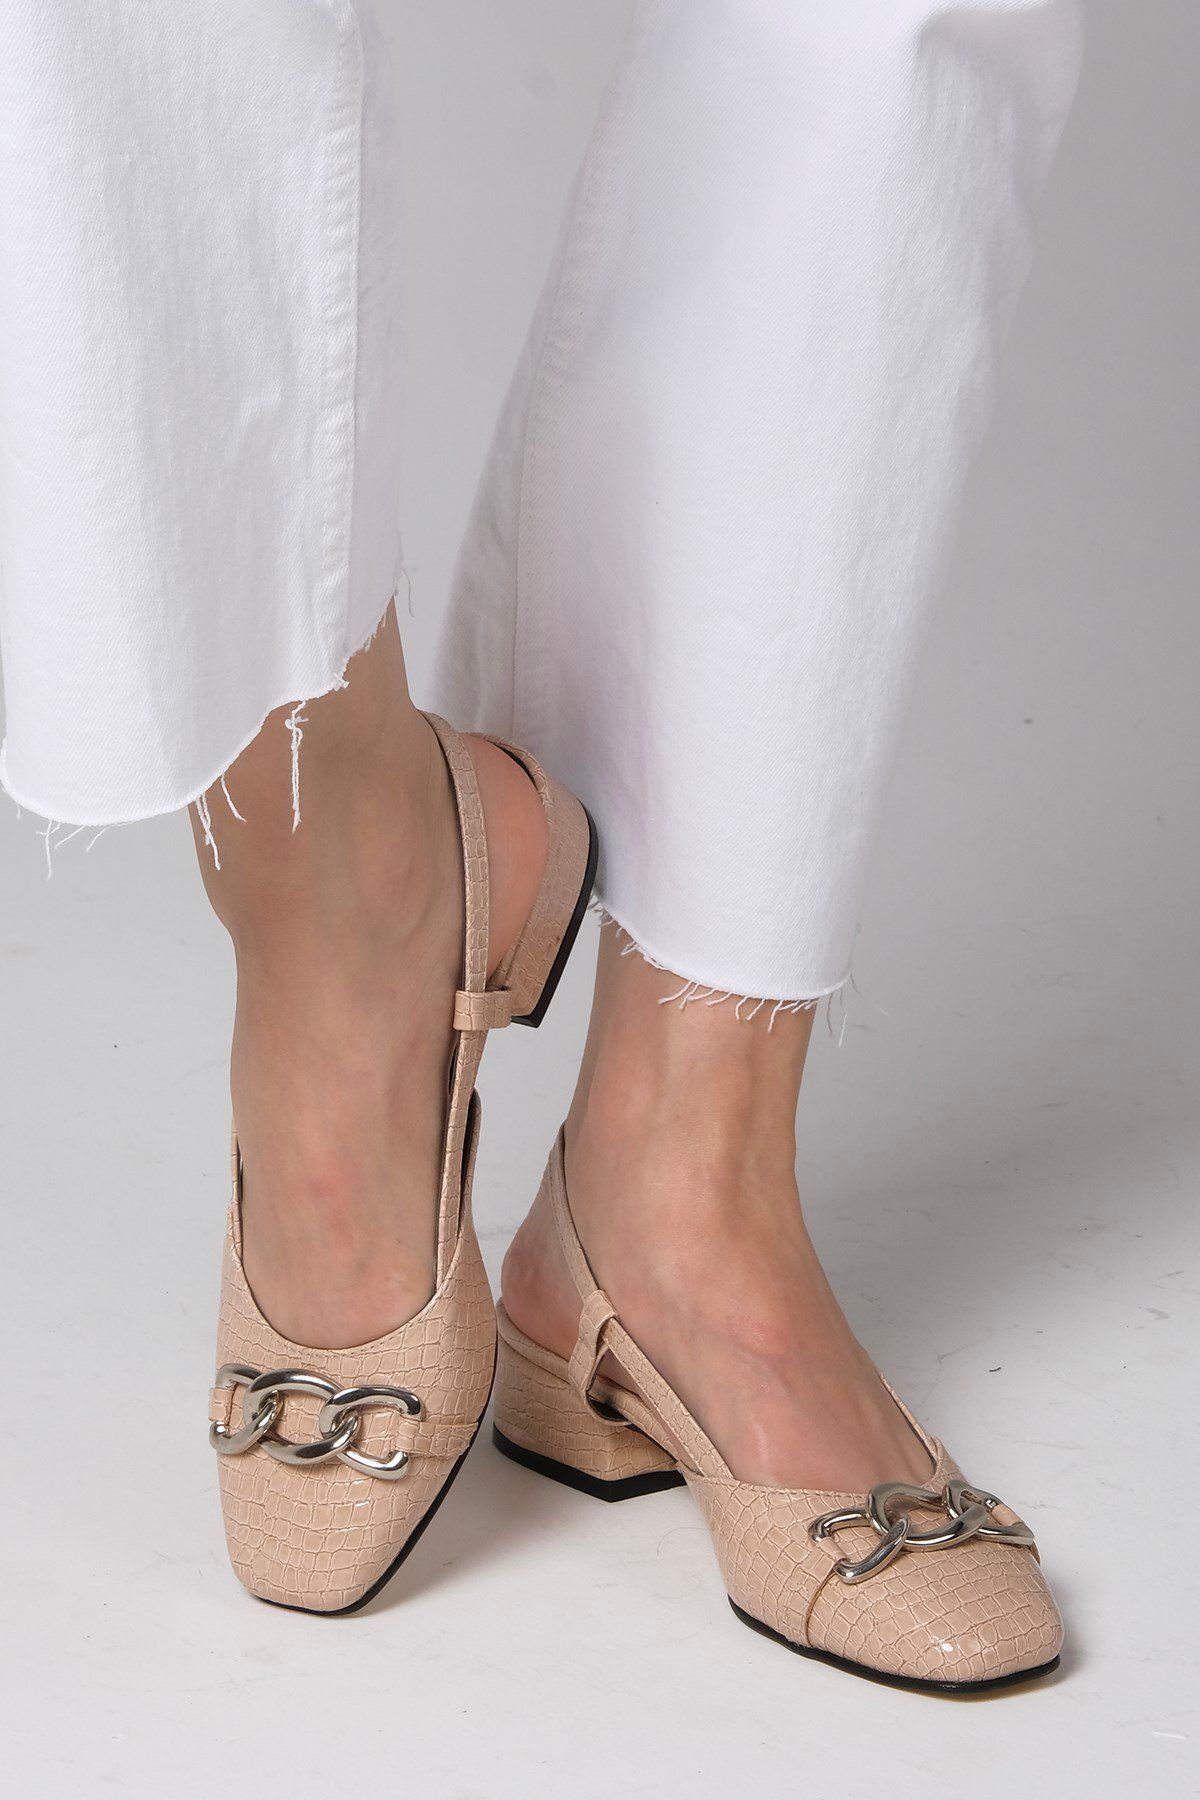 Mio Gusto Serena Ten Rengi Yılan Desenli Kısa Topuklu Kadın Ayakkabı